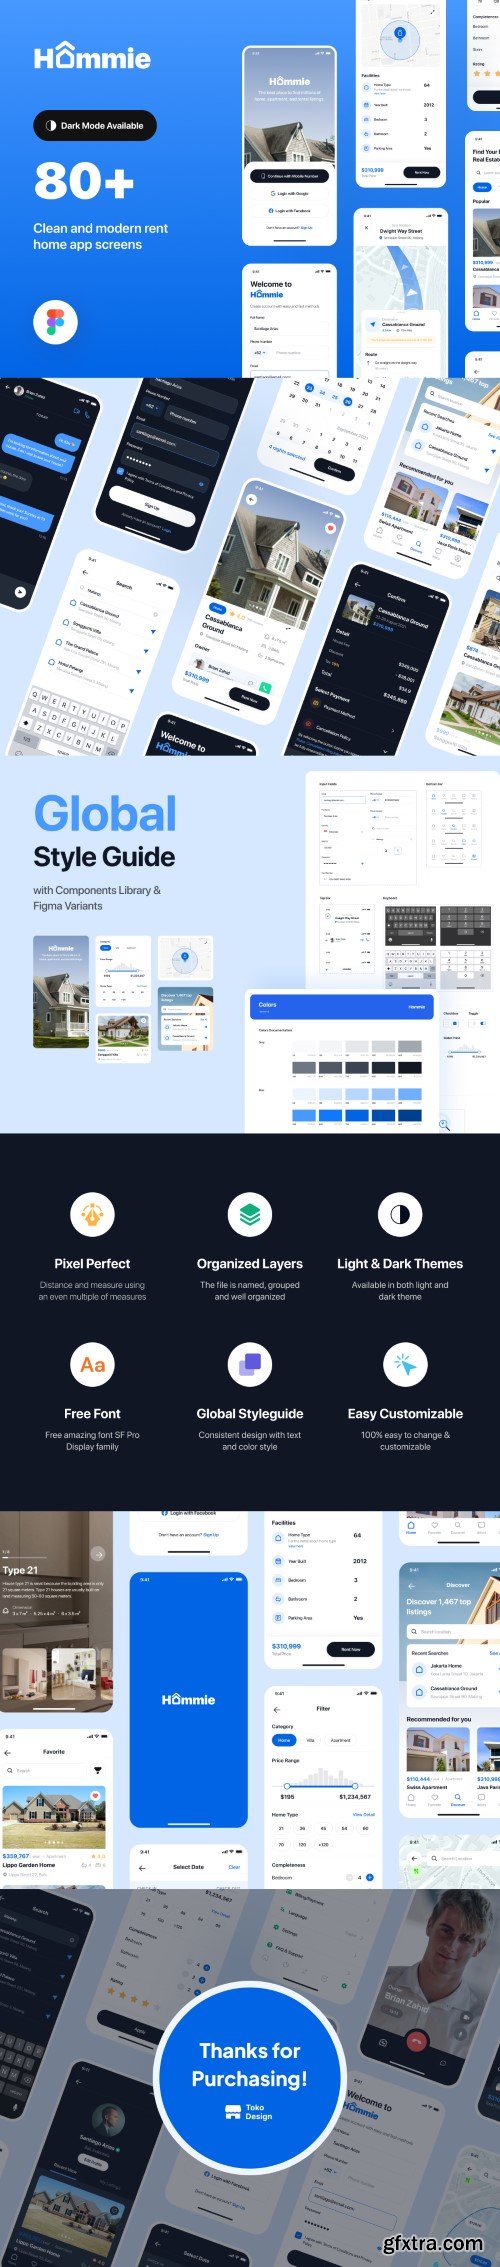 Hommie - Real Estate App UI Kit